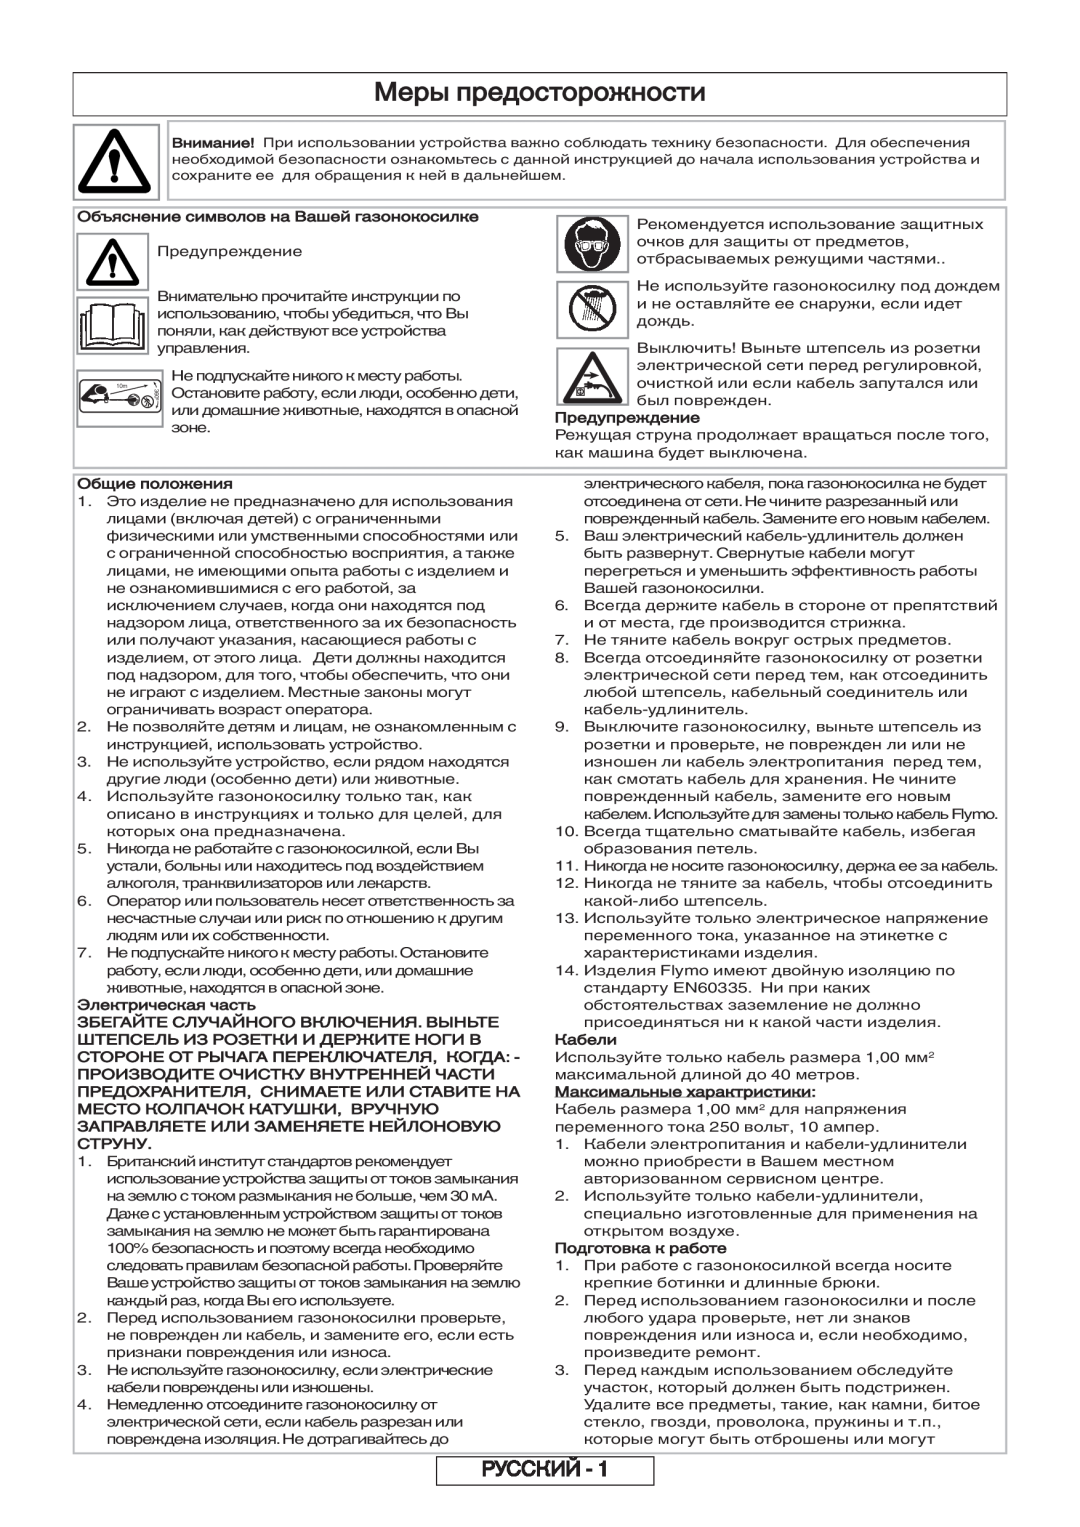 Flymo 600 HD Меры предосторожности, Русский, Объяснение символов на Вашей газонокосилке, Предупреждение, Общие положения 